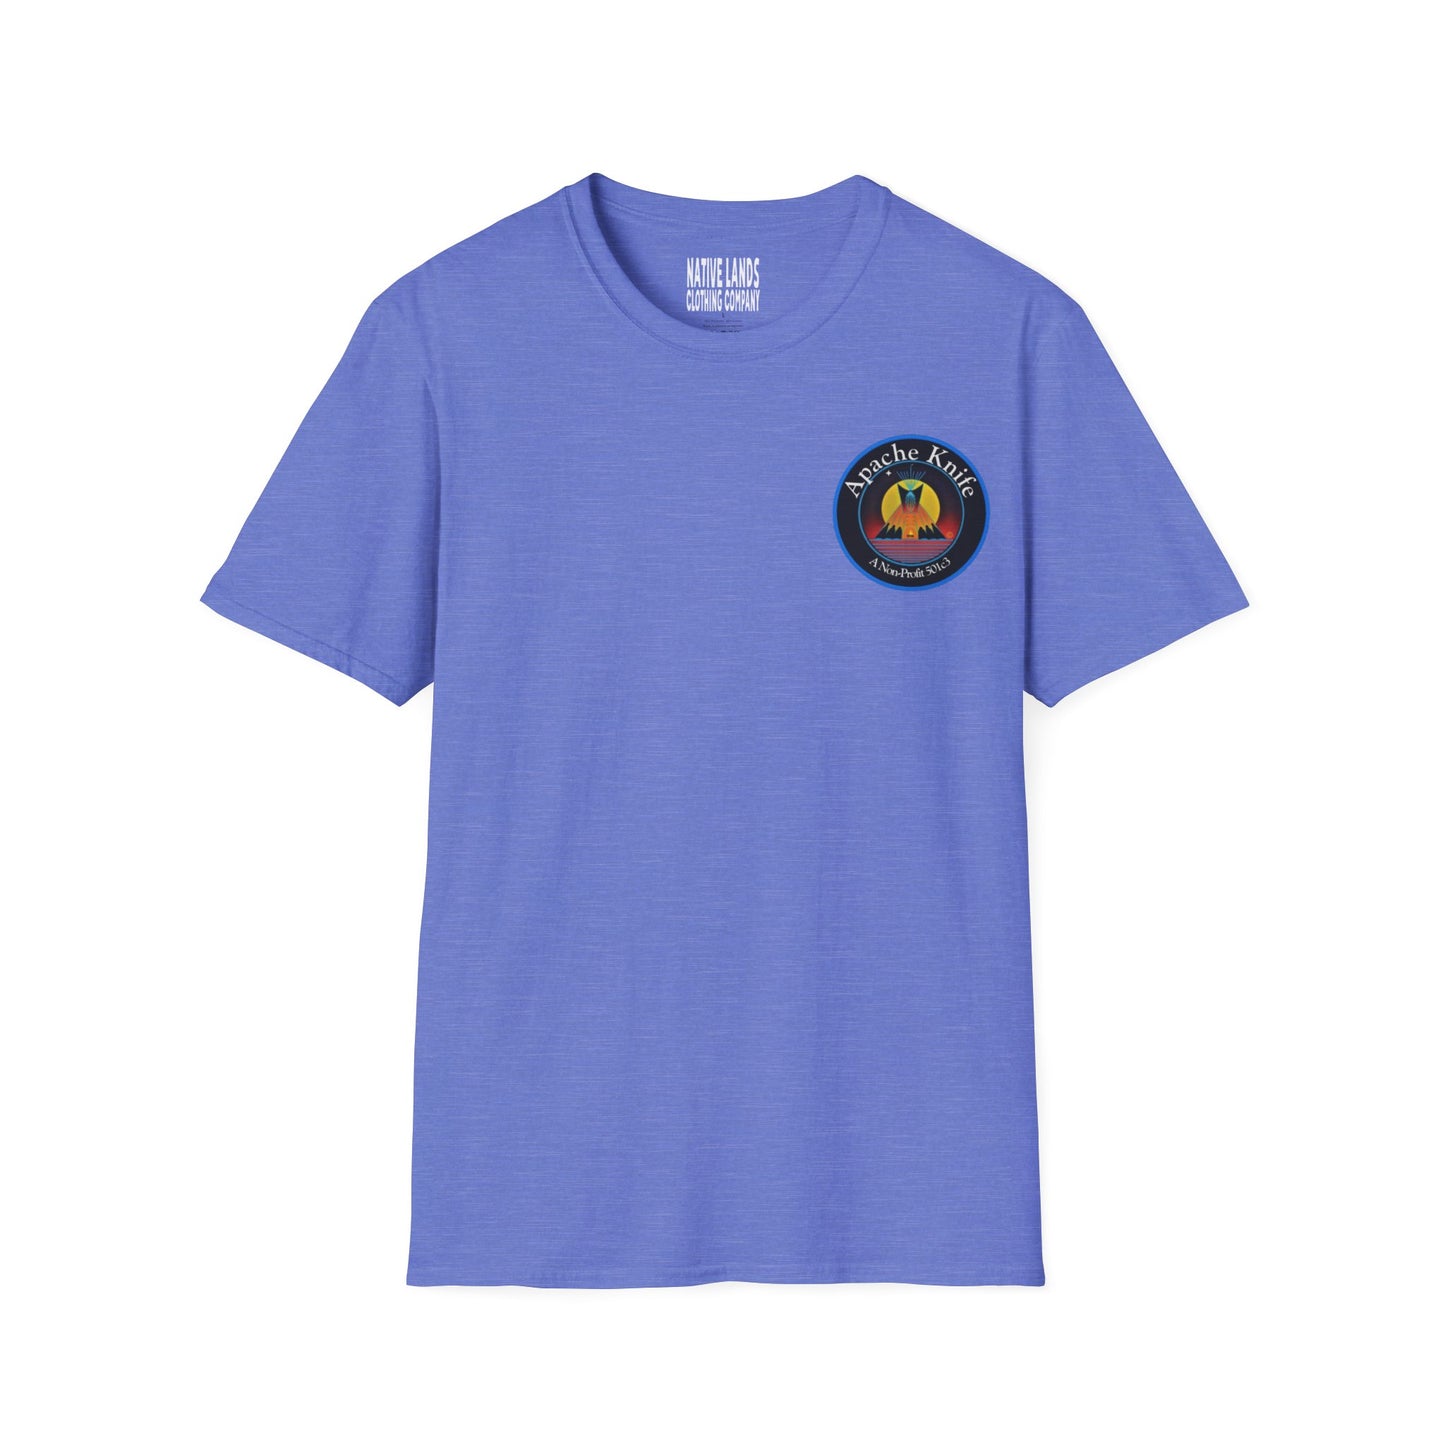 Apache Knife Foundation Shirt Non-Profit (Vorder-/Rückseite) Baumwolle Indianer (Sonderbestellung)